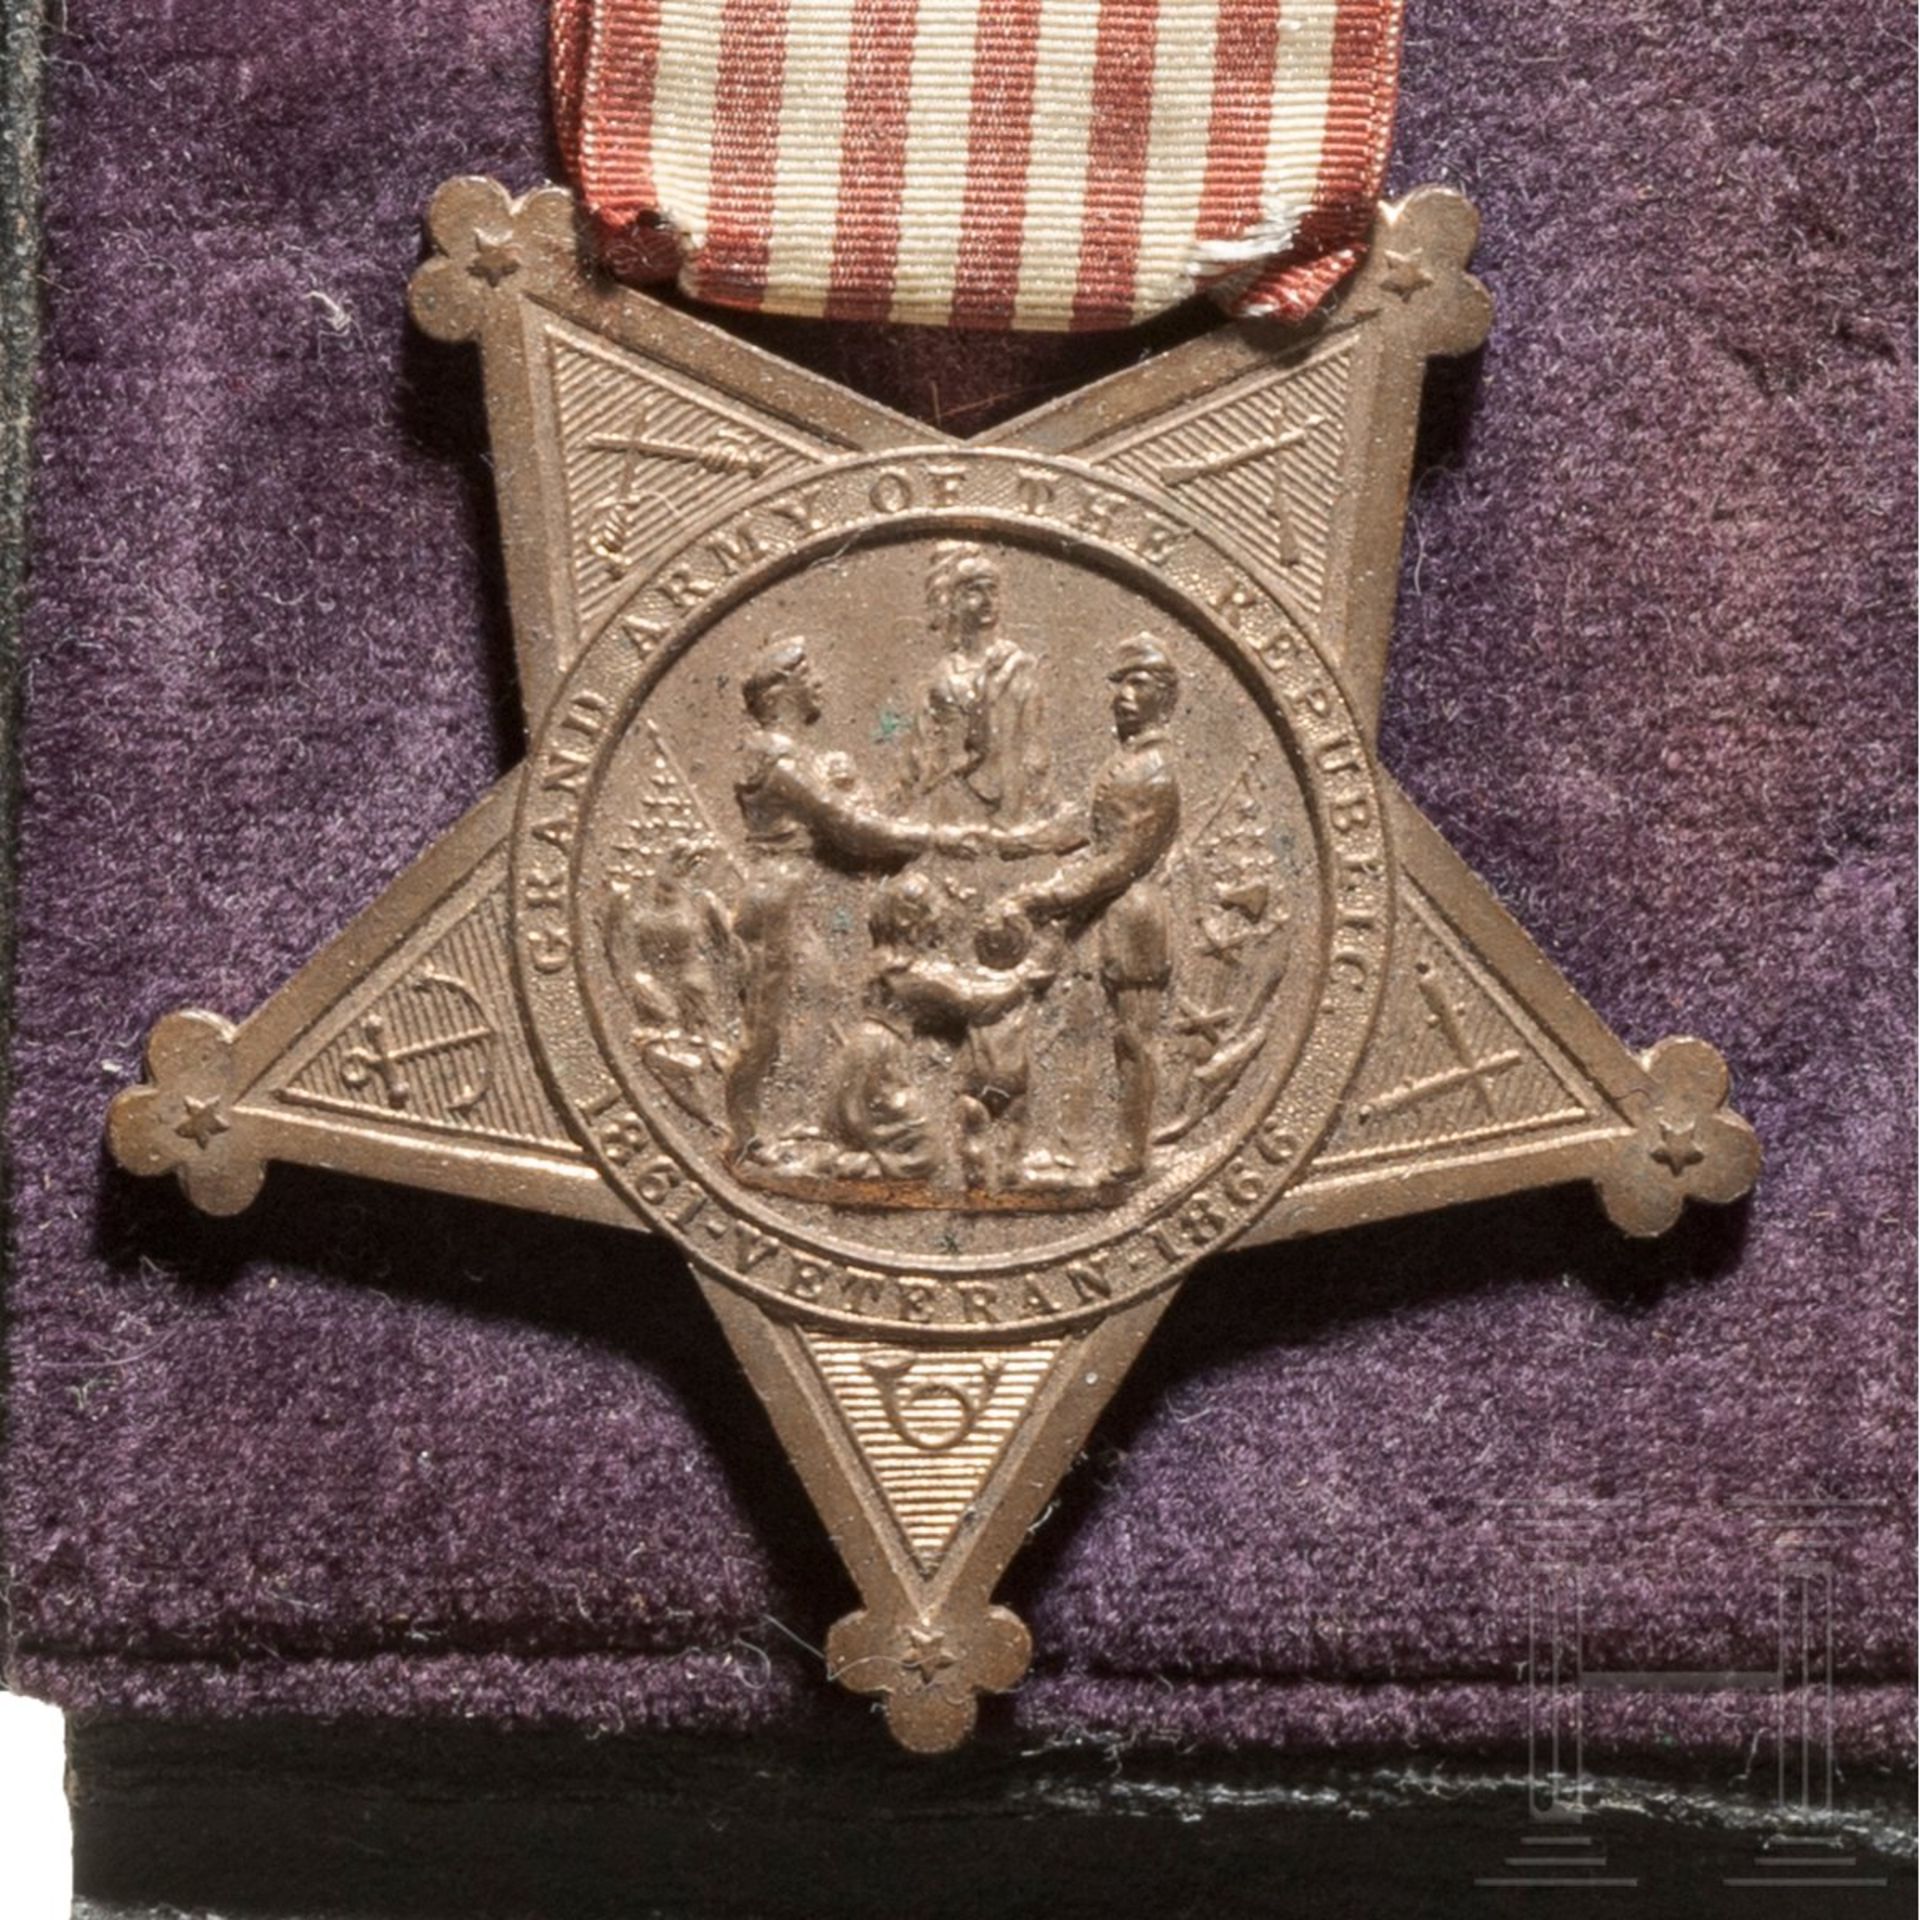 Sgt. John Karr – Congressional Medal of Honor als Mitglied der Ehrengarde für den verstorbenen Präsi - Bild 7 aus 11